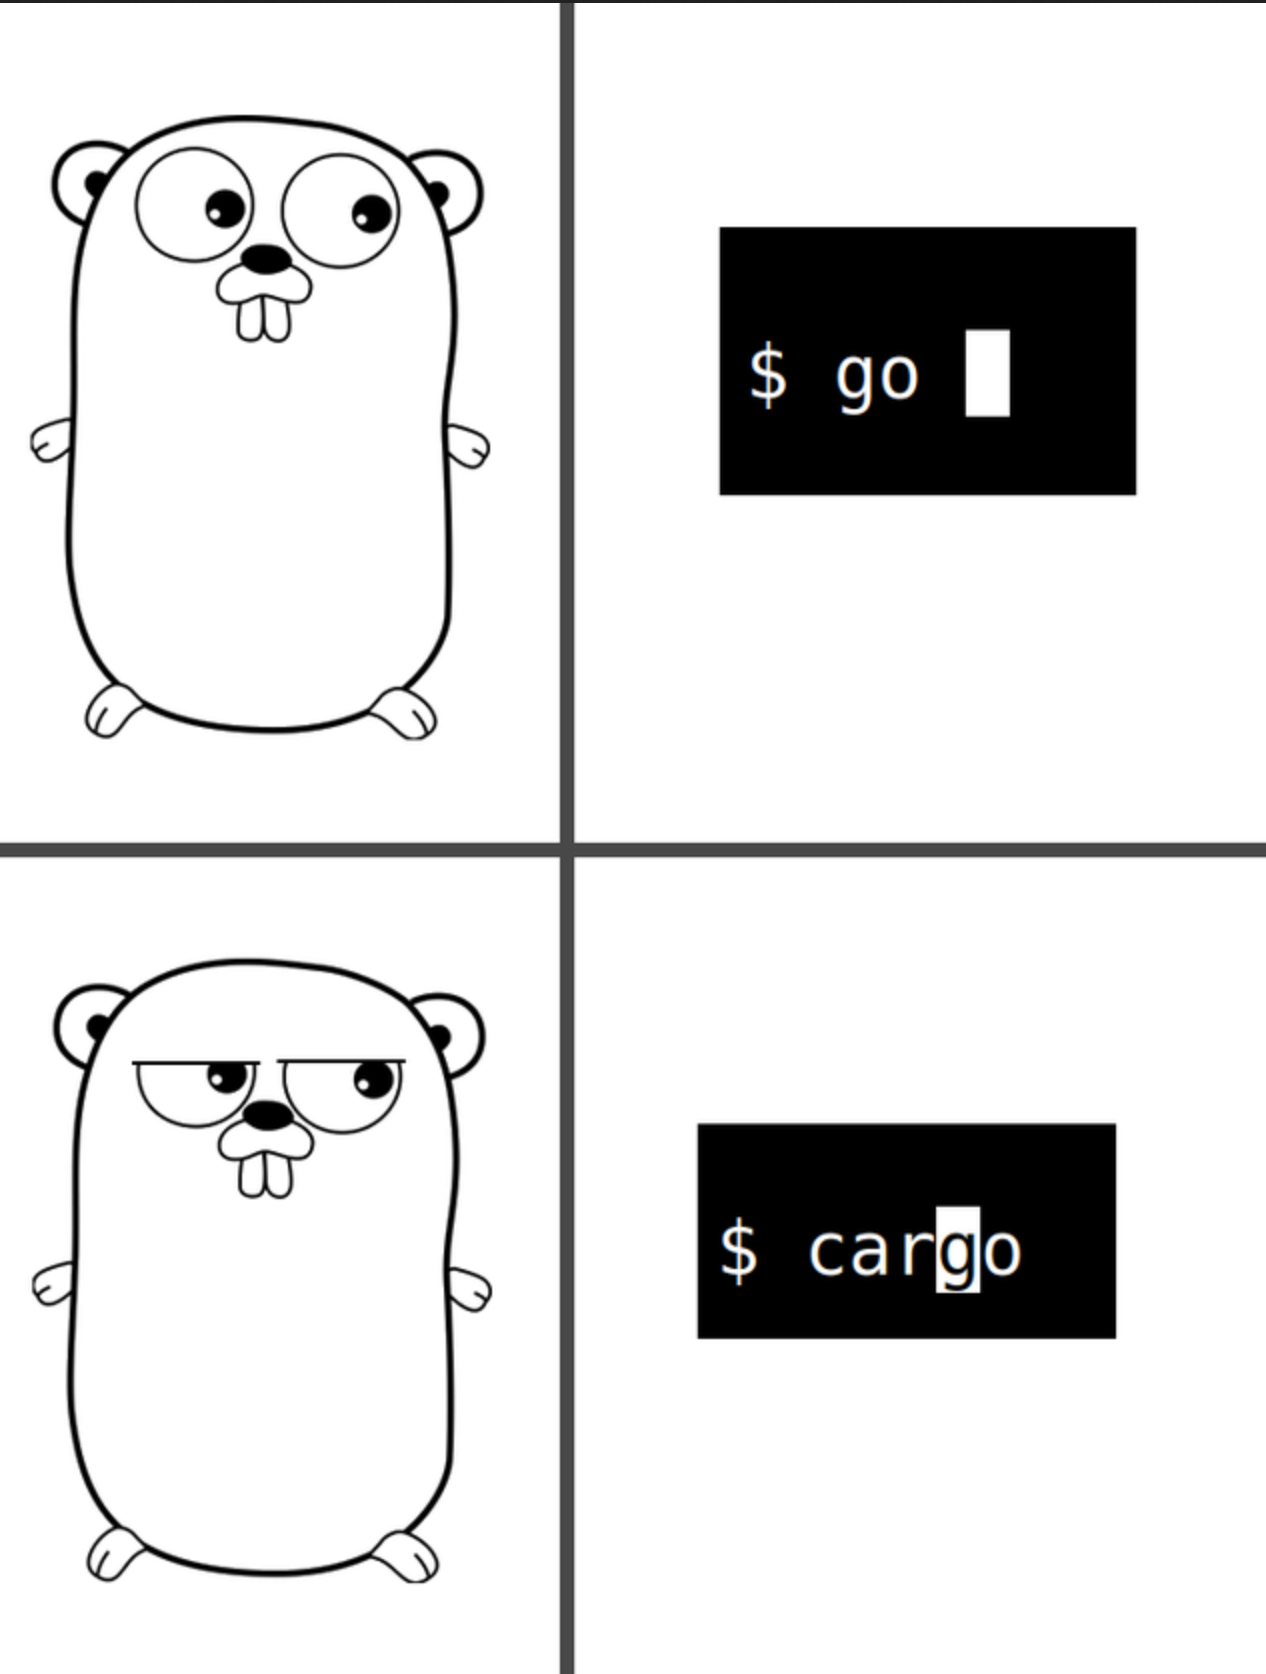 go-cargo.png